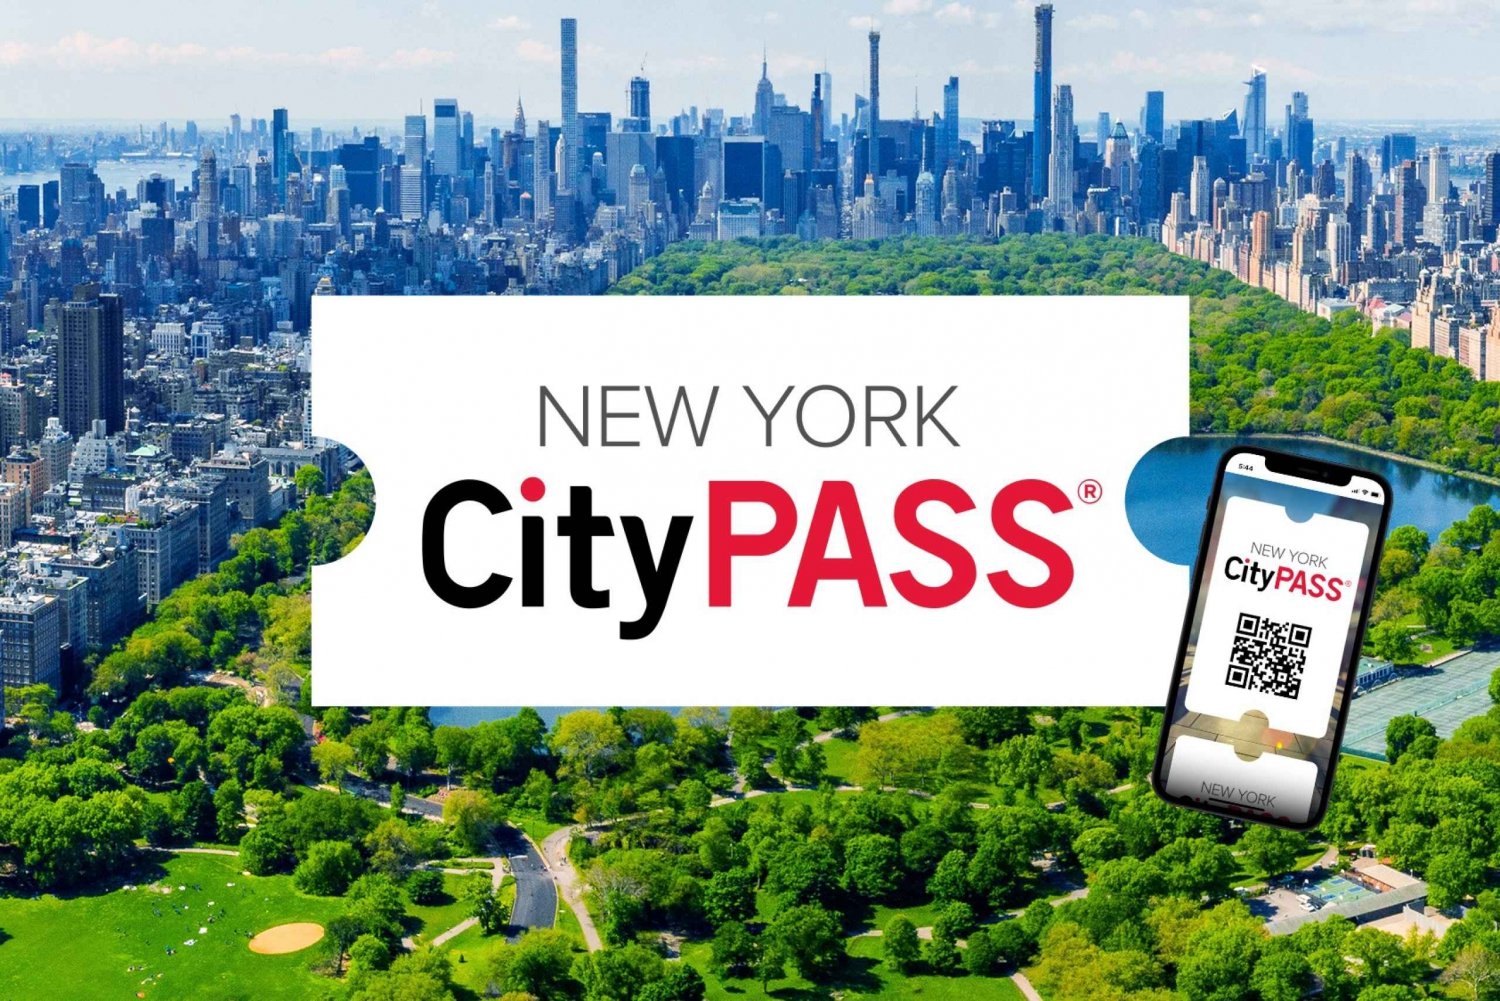 Nueva York: CityPASS® con entradas a 5 atracciones principales